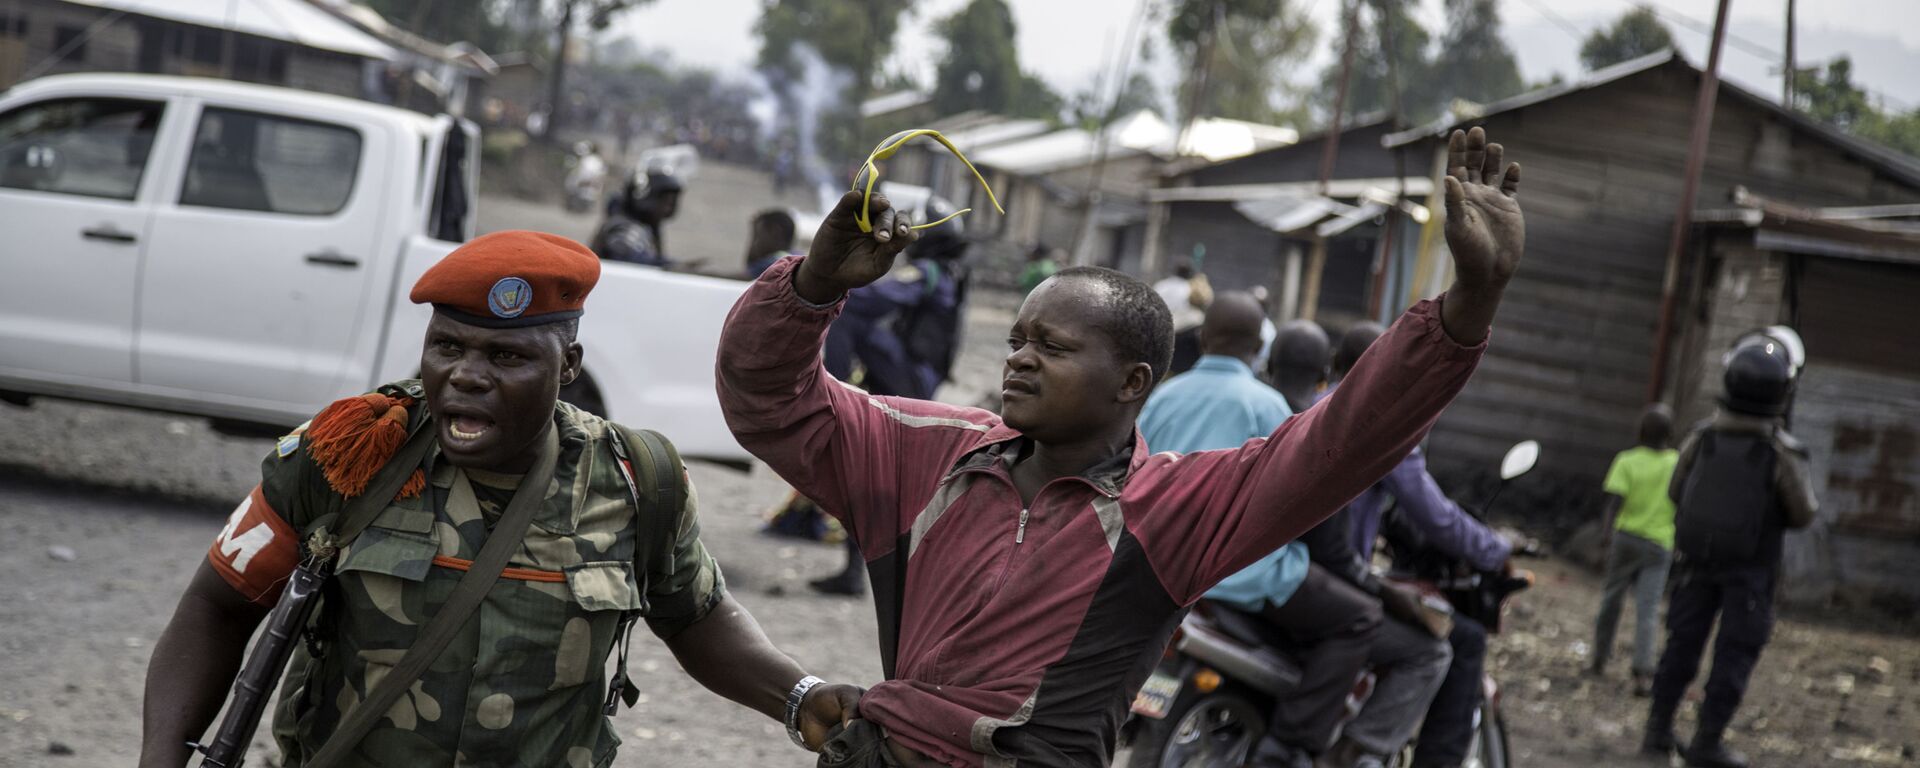 ضابط يلقي القبض على رجل حاول إغلاق الطريق بالحجارة، في حي ماجينغو في غوما، شرق جمهورية الكونغو الديمقراطية، في 19 ديسمبر/ كانون الأول عام 2016، - سبوتنيك عربي, 1920, 06.06.2022